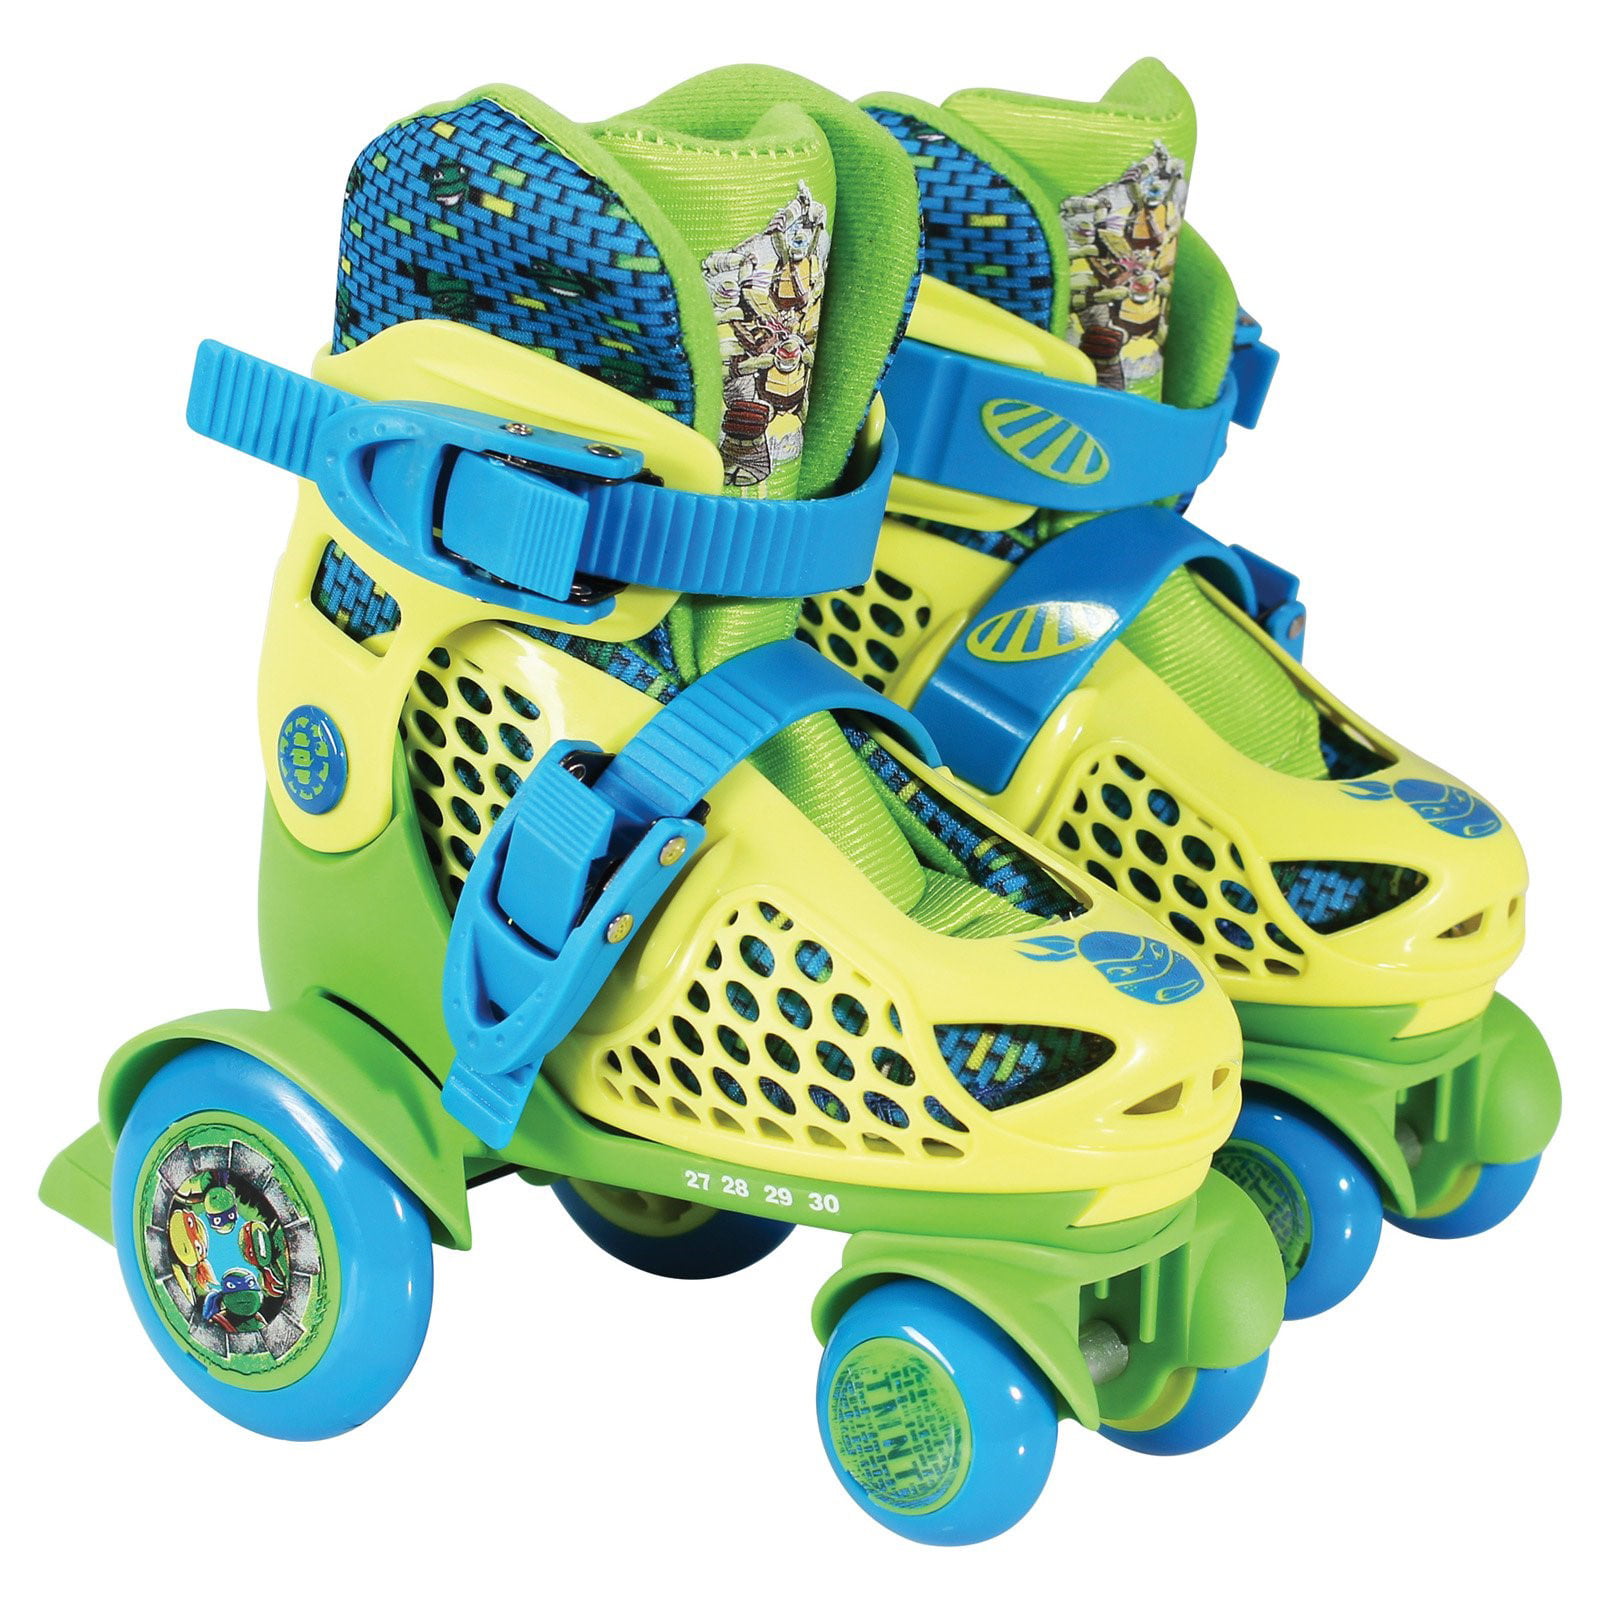 Junior Size 6-9 PlayWheels Teenage Mutant Ninja Turtles Kids Big Wheel Quad Roller Skates